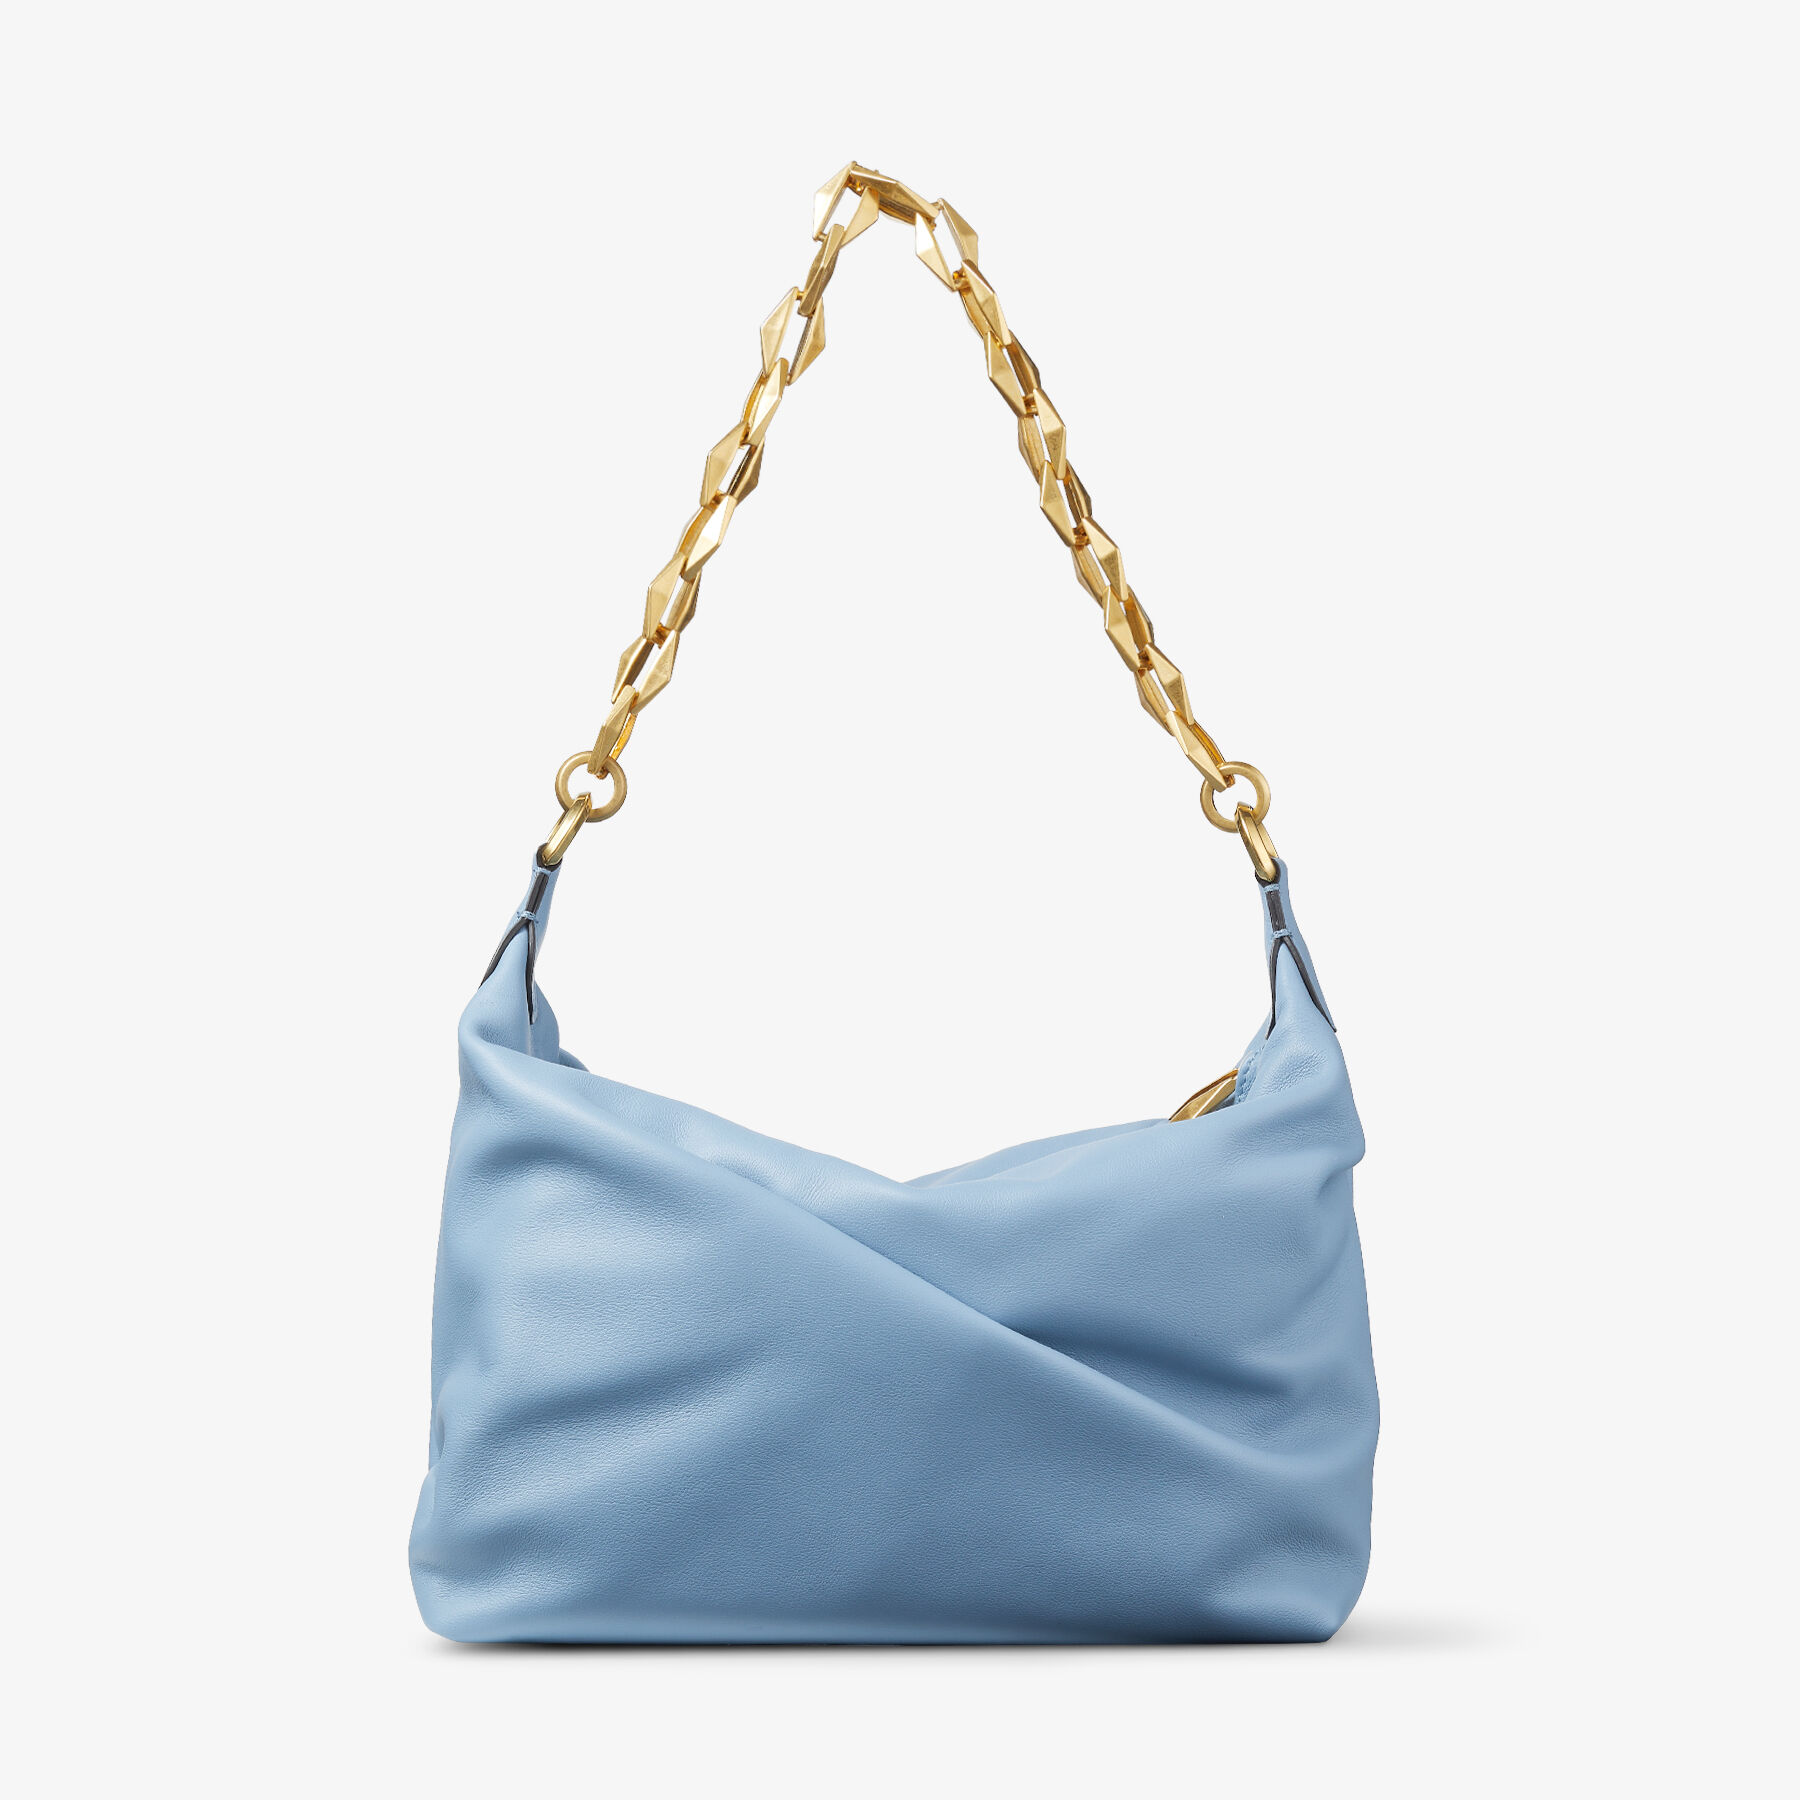 DIAMOND SOFT HOBO/S | Smoky Blue Soft Calf Leather Hobo Bag with 